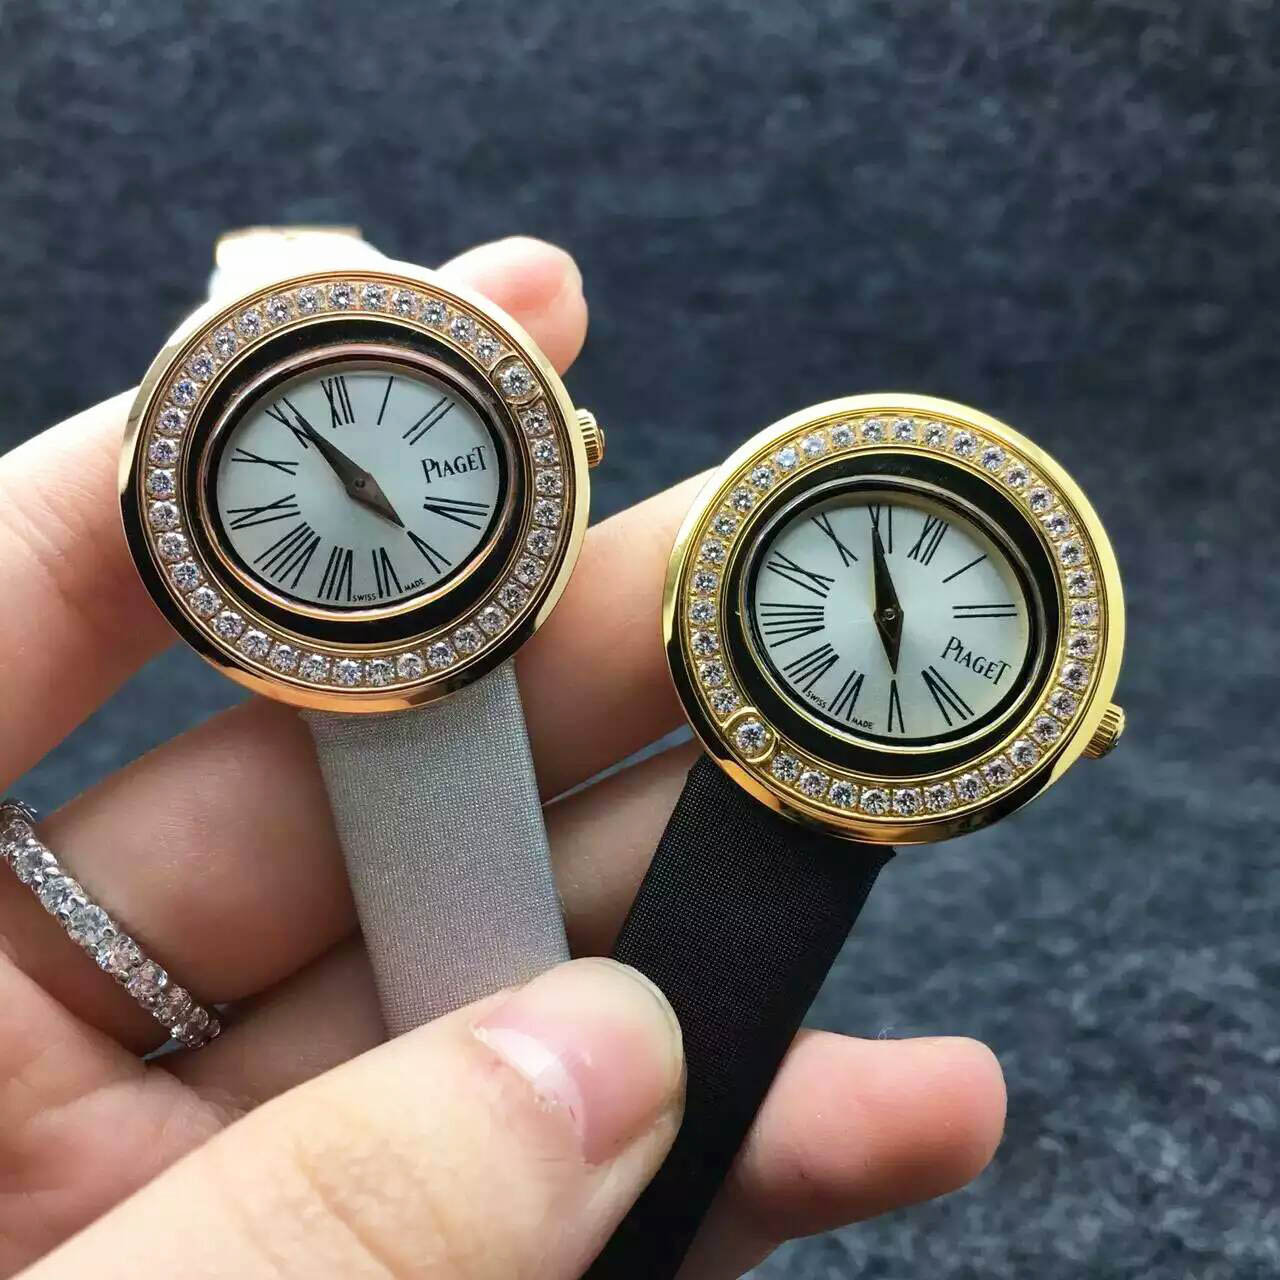 3A伯爵 - PIAGET 女士腕錶 熱門腕錶推薦 a貨手錶